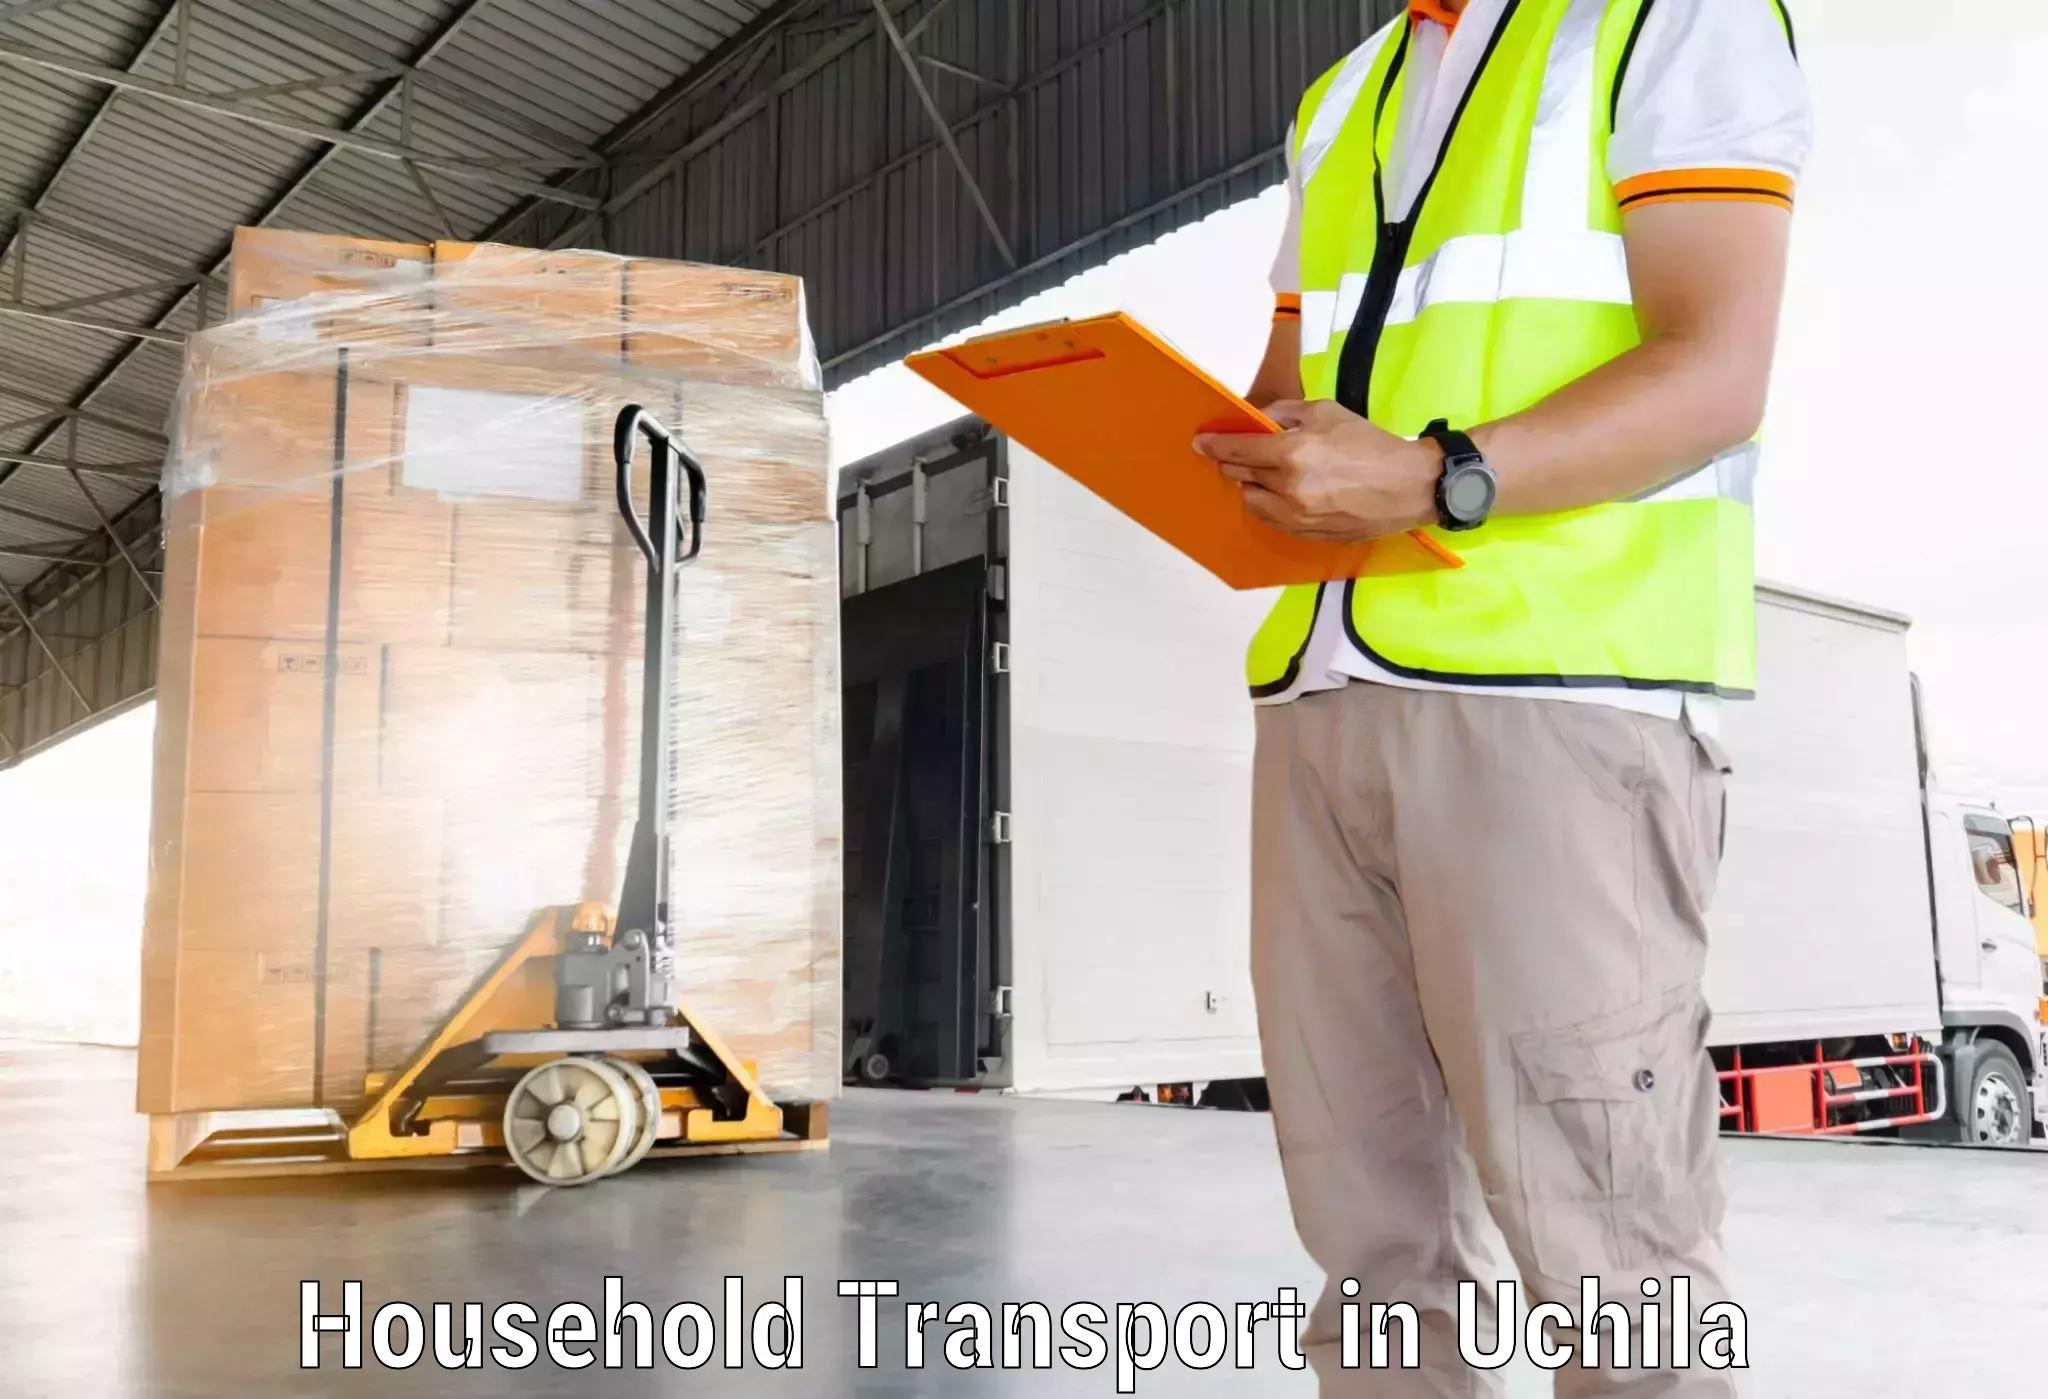 Household goods transport service in Uchila